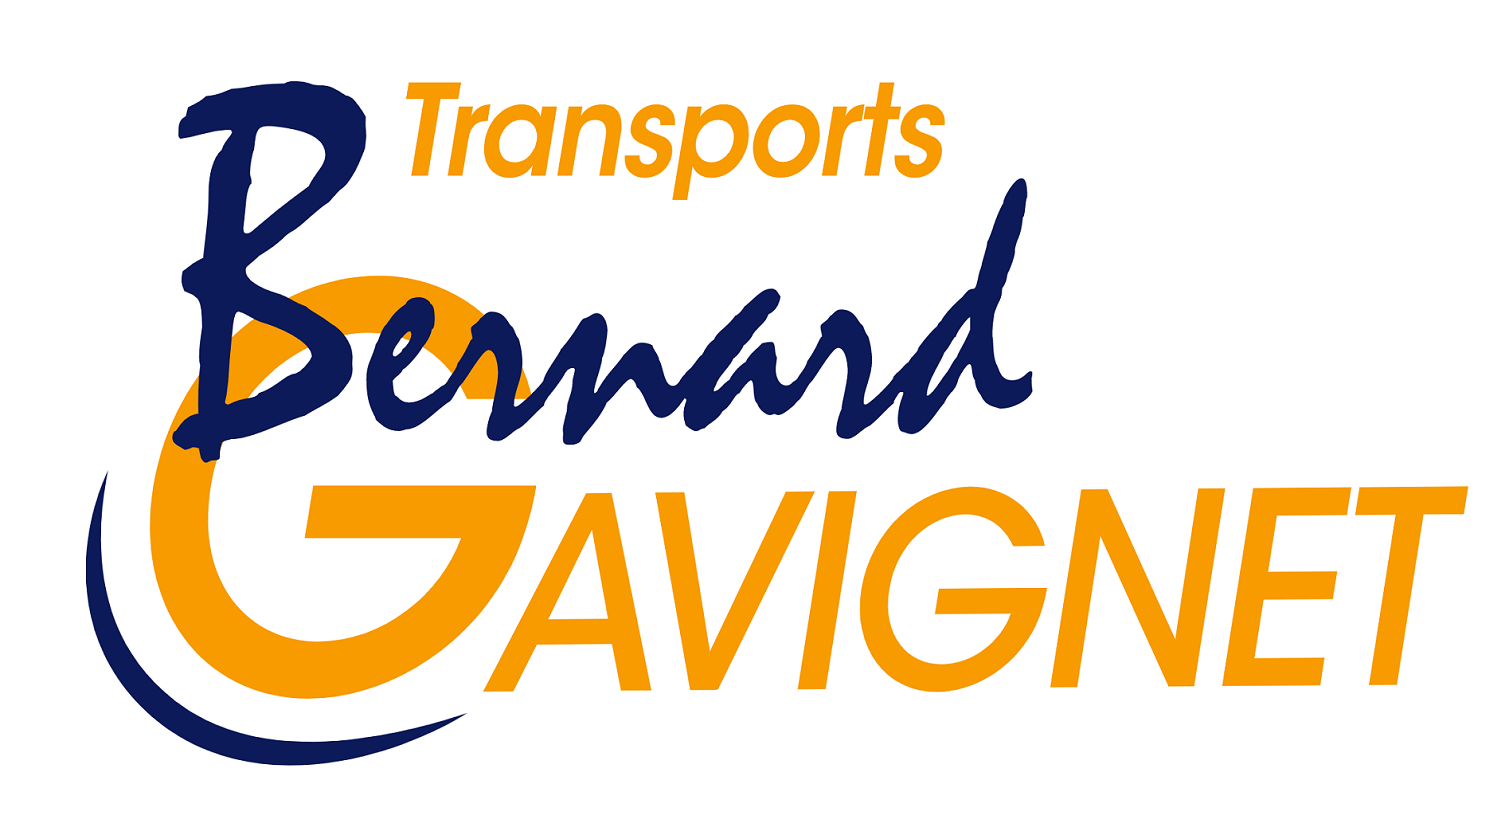 Transports Bernard Gavignet